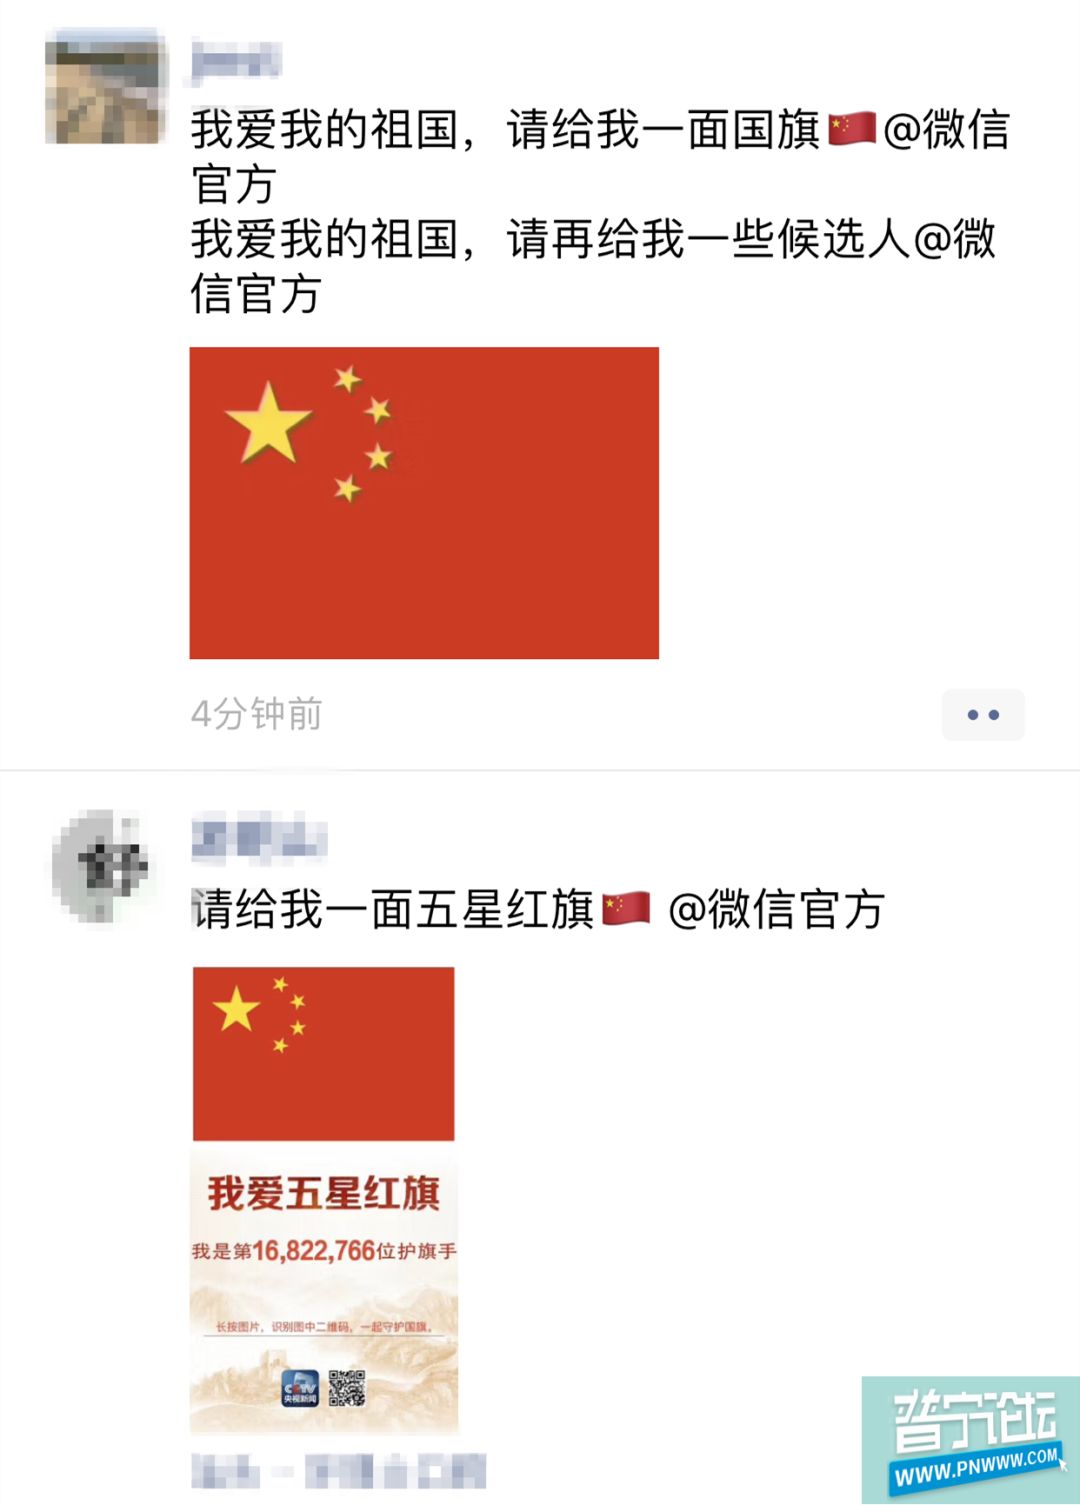 热点!"请给我一面五星红旗@微信官方"刷屏了朋友圈!